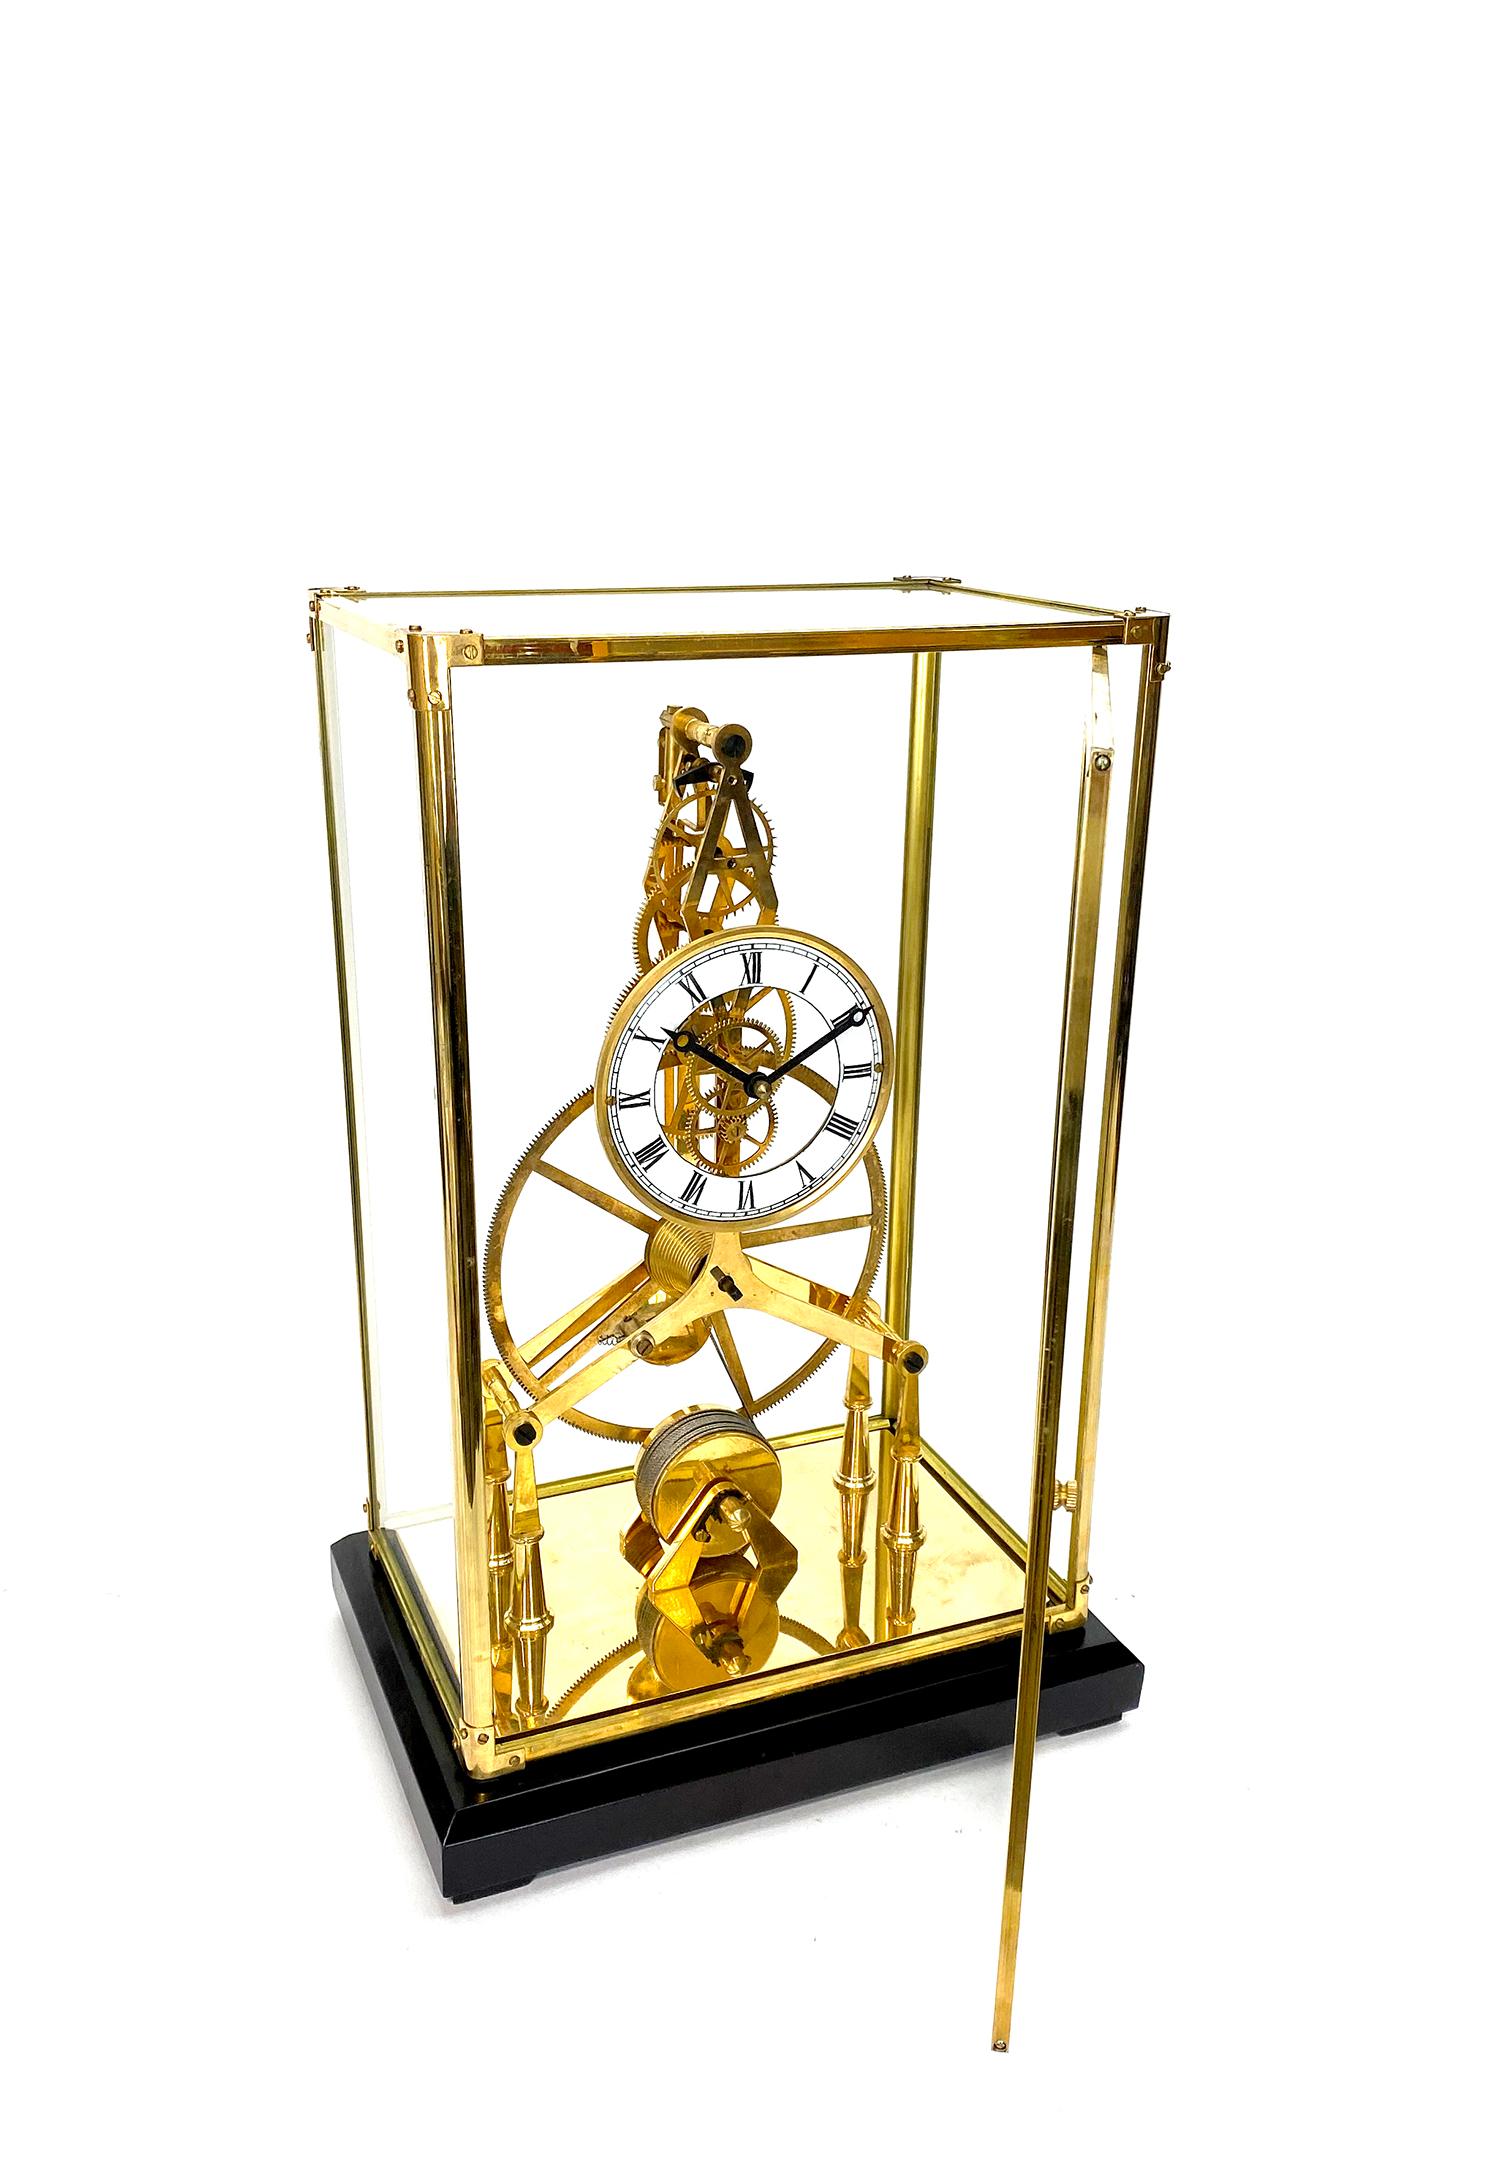 Horloge squelette à cadran en porcelaine avec roue de fusée et cadran en porcelaine, plaquée or 24K, 8 jours

Voici une très belle horloge squelette plaquée 24K, logée dans un boîtier en verre avec un cadre en laiton. Il est doté d'une porte à